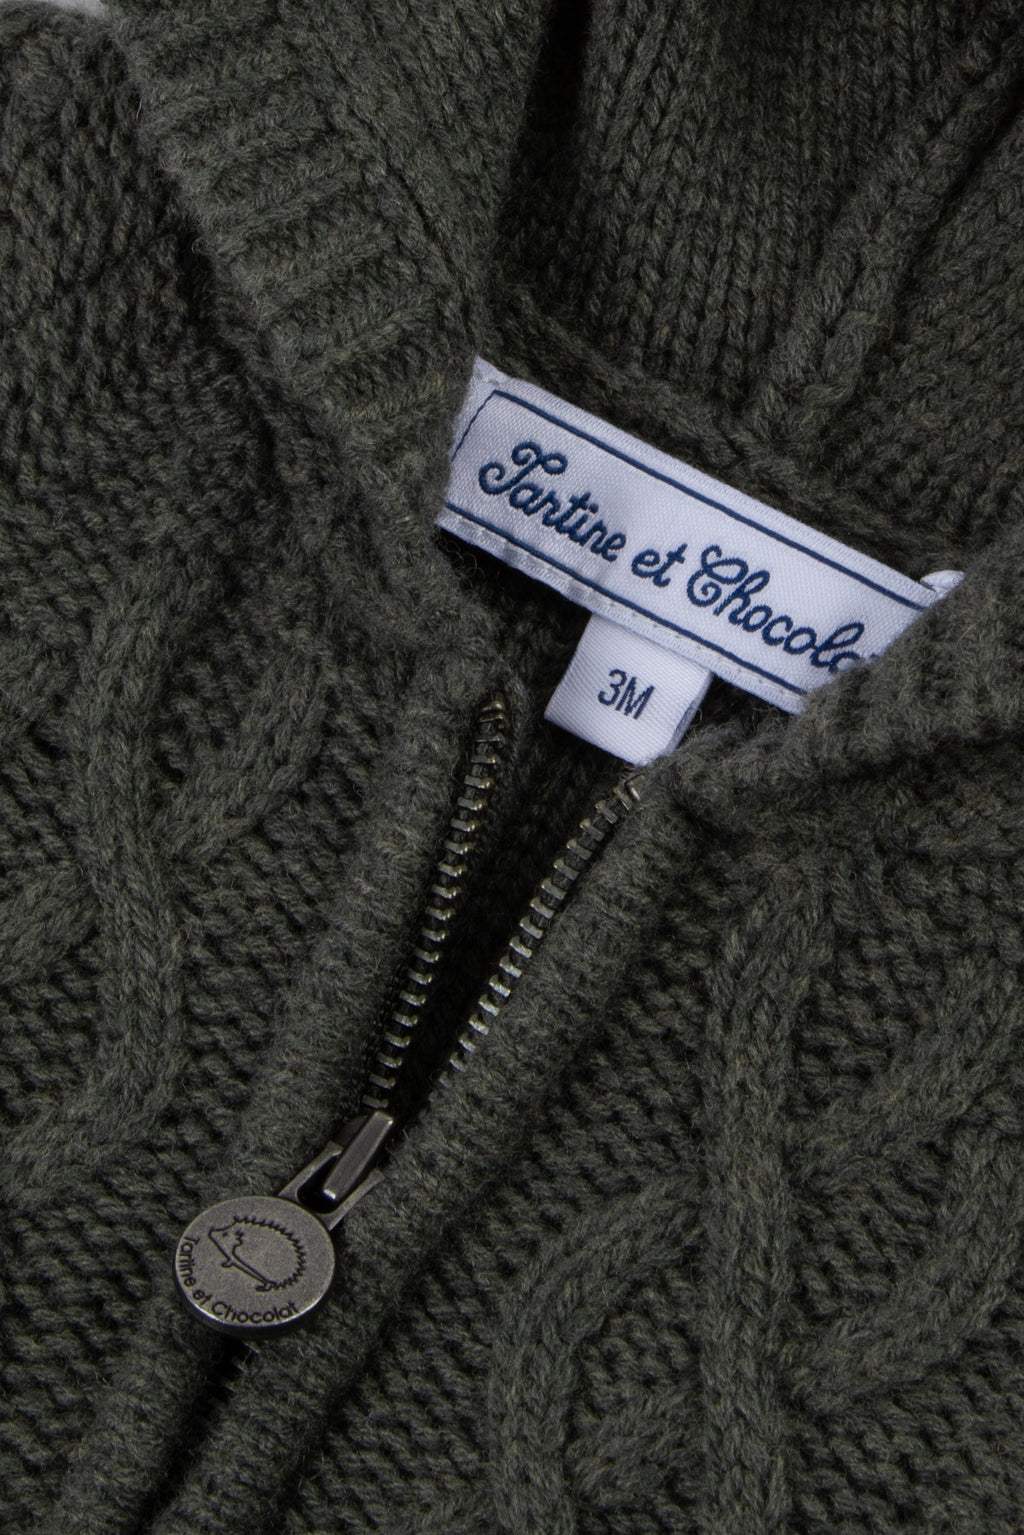 Cardigan - khaki Knitwear braided